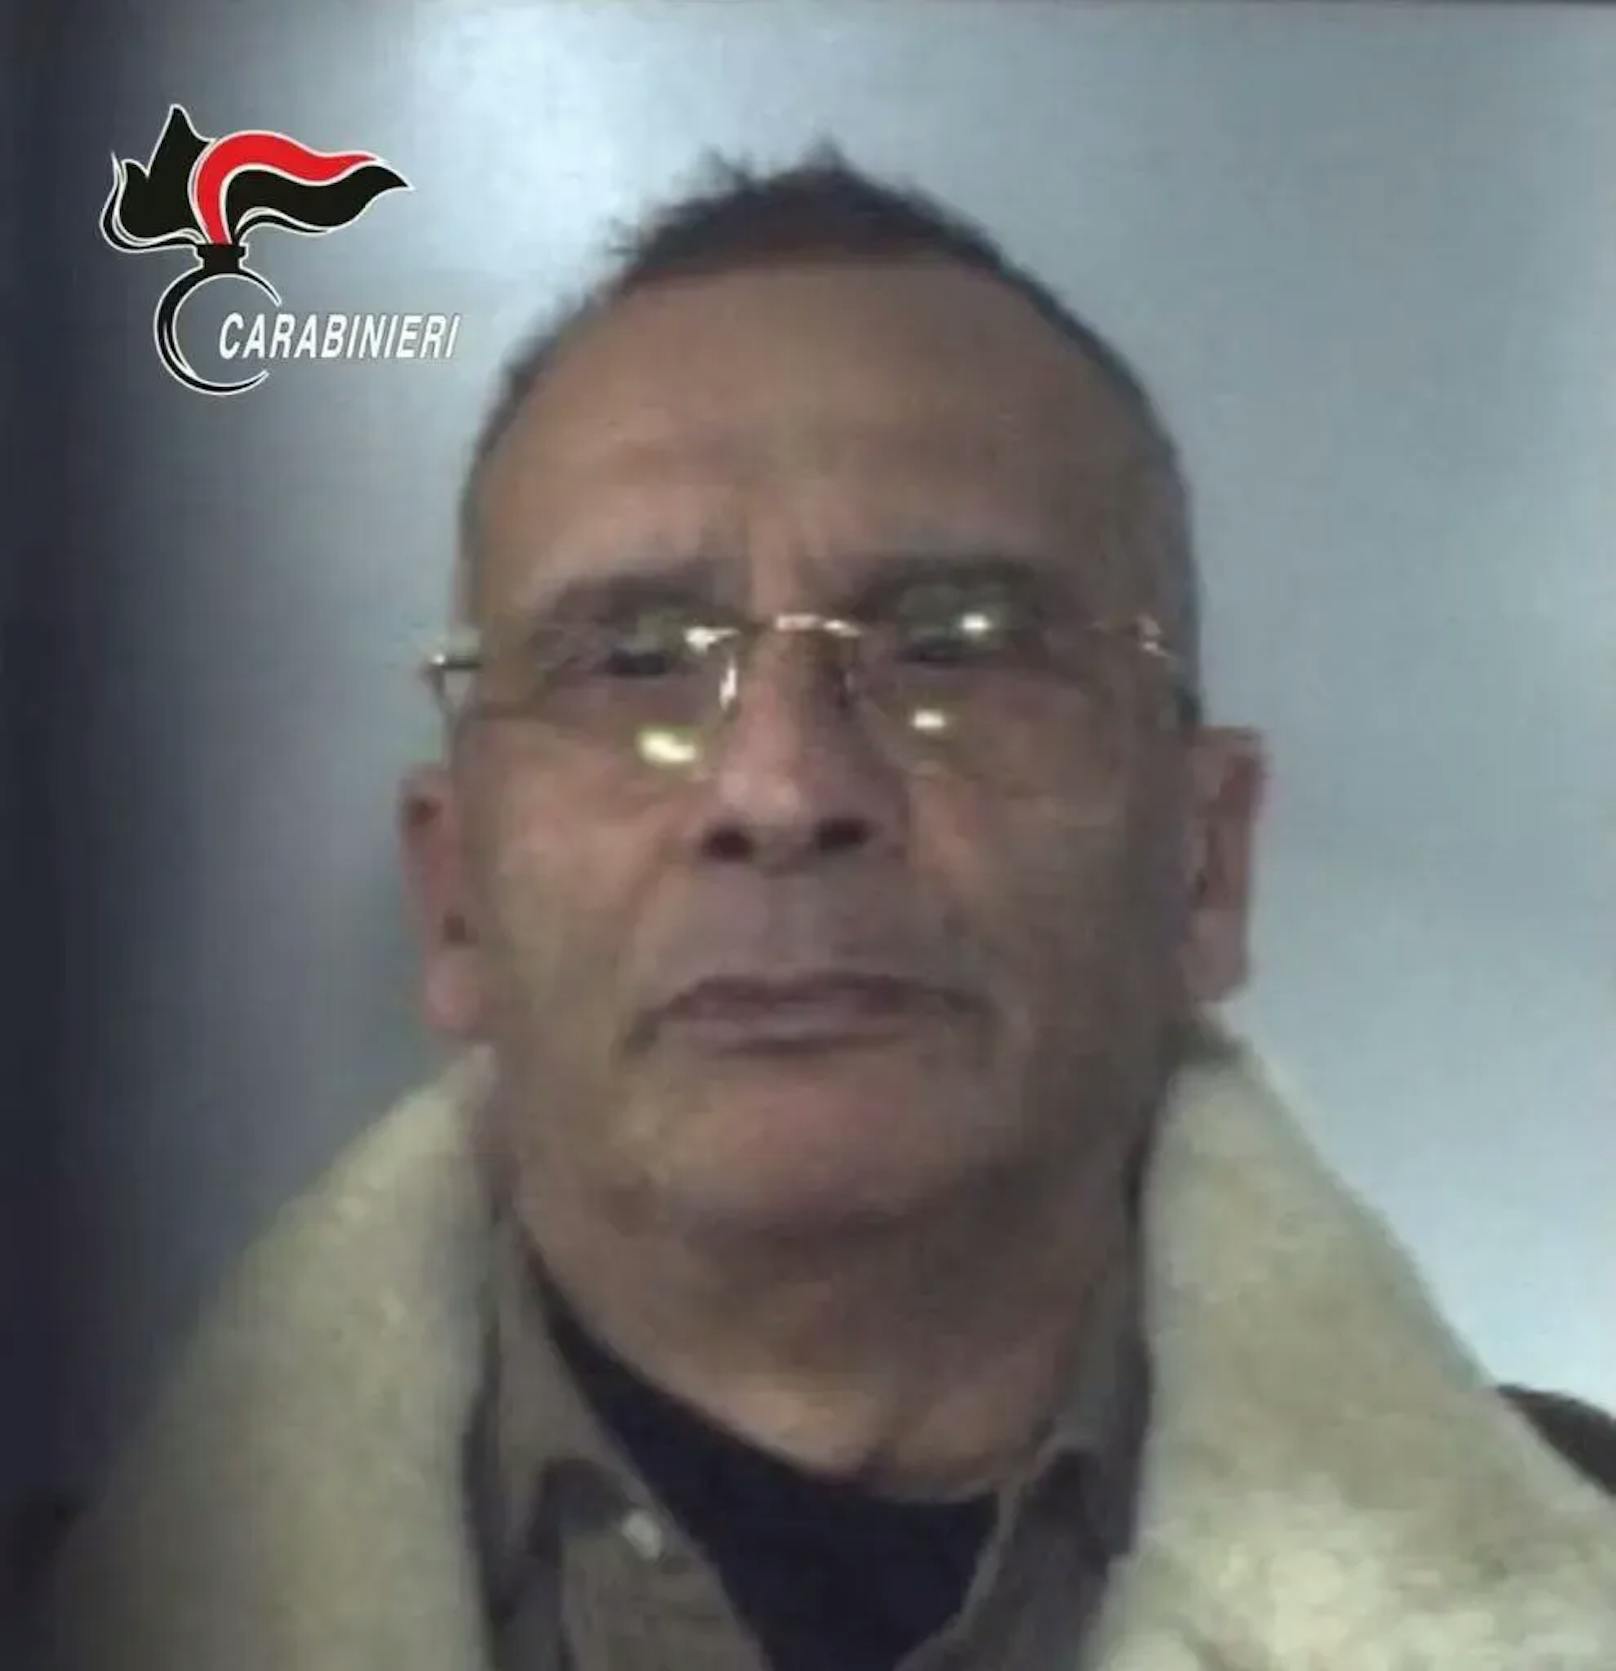 Polizei zeigt erstes Foto von Mafia-Boss in Haft